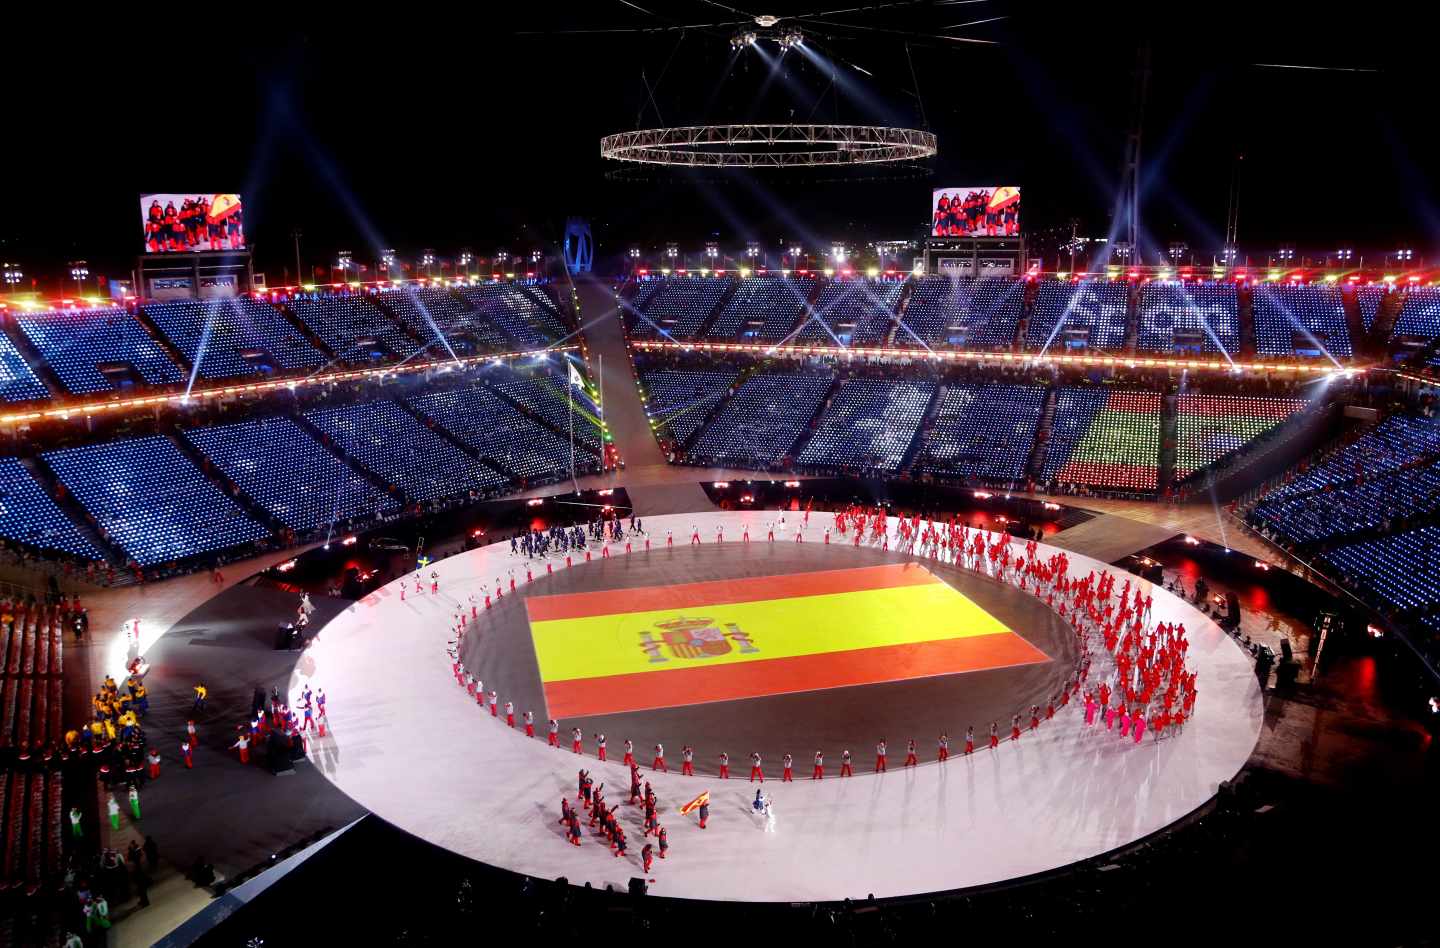 Bandera de España proyectada en el centro del escenario durante la ceremonia de inauguración de los Juegos Olímpicos de Invierno de PyeongChang 2018.